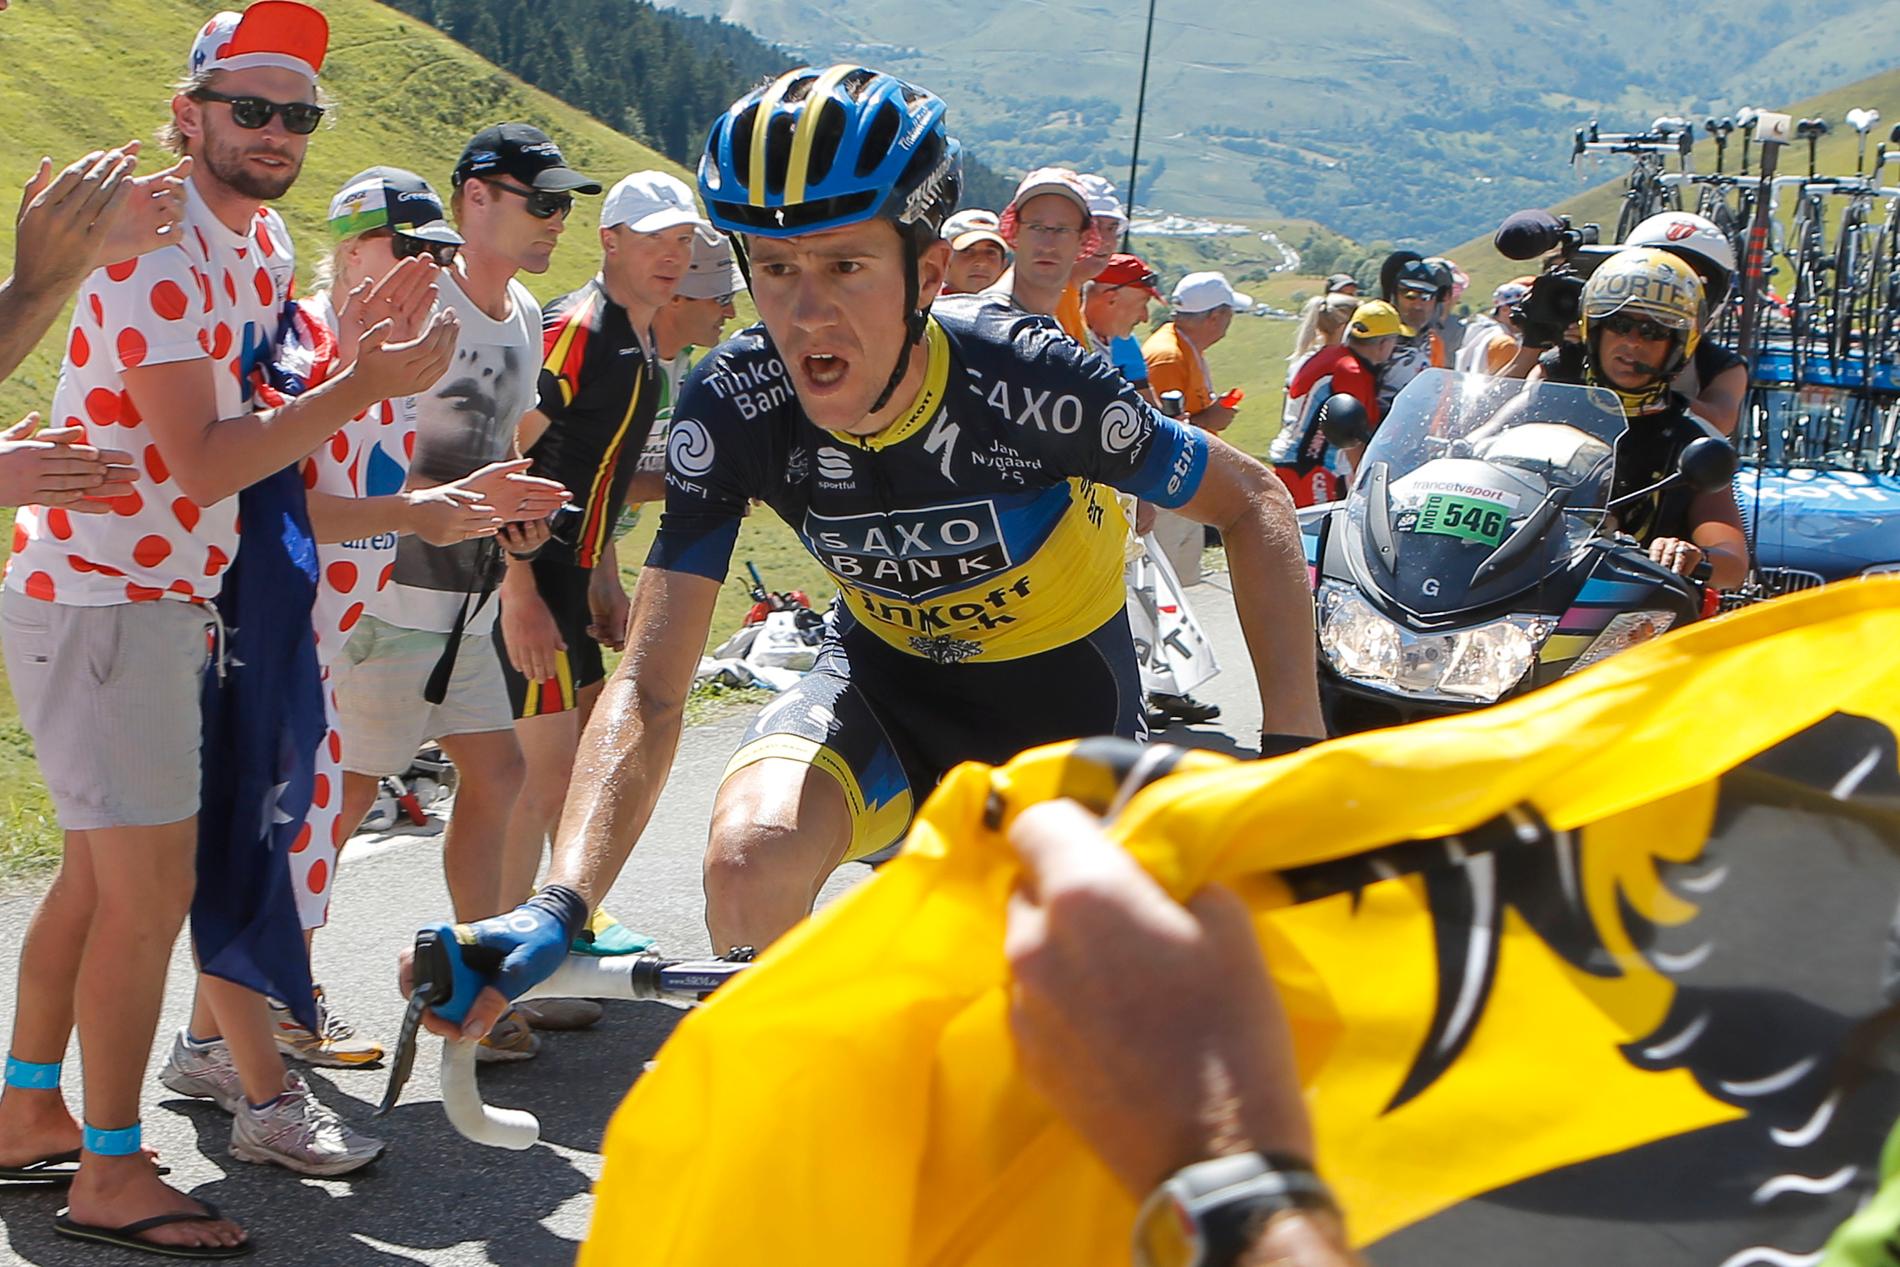 Chris Anker Sørensen under en bergsetapp i Tour de France 2012.